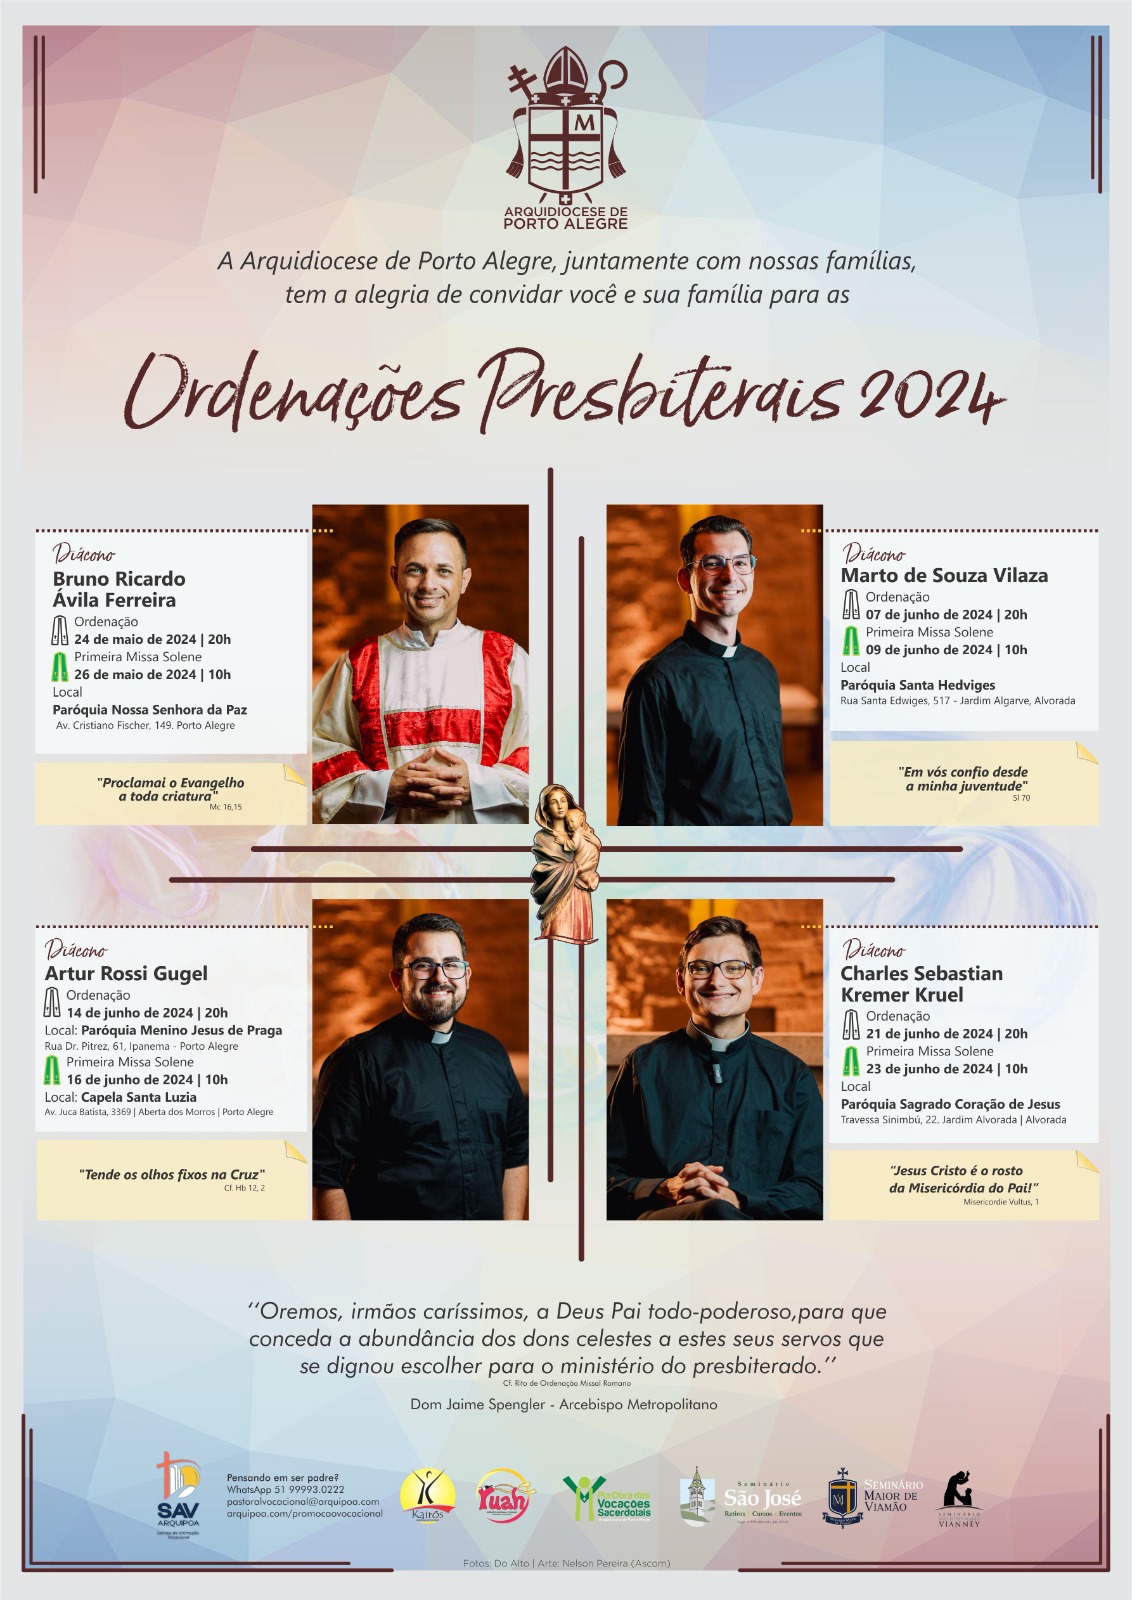 Contagem regressiva: em dois meses iniciam às ordenações sacerdotais na Arquidiocese